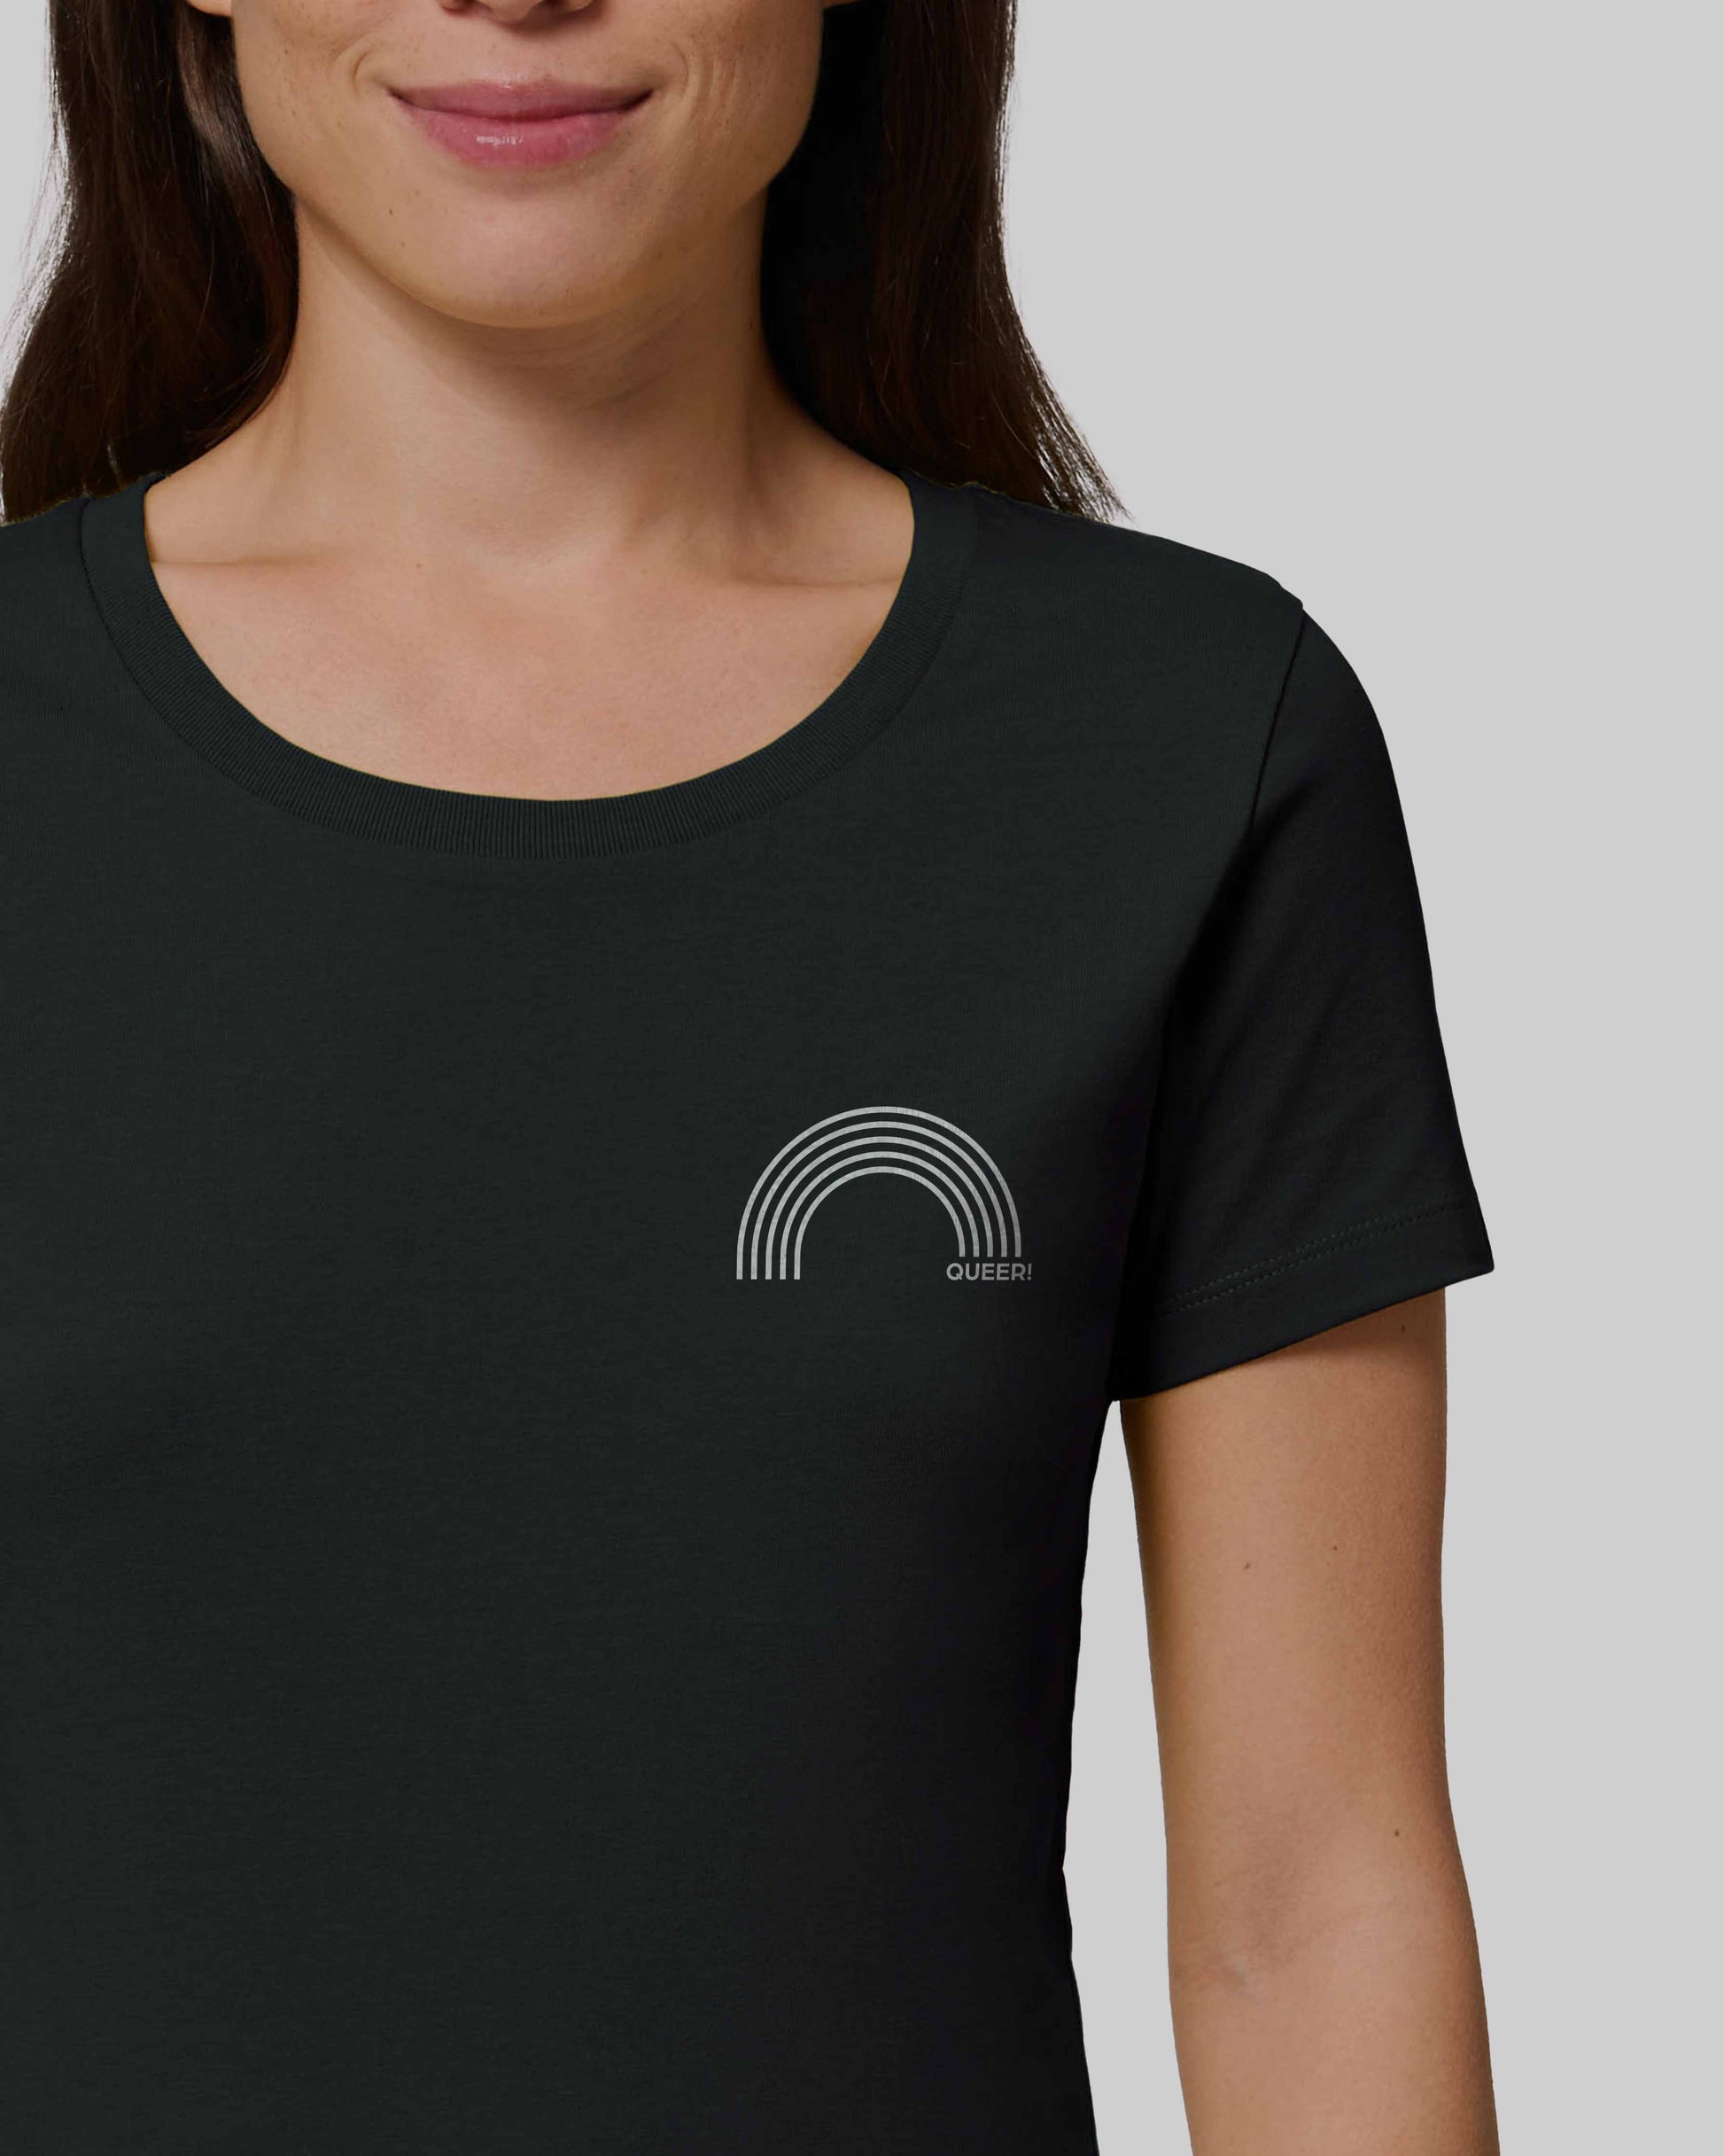 EINHORST® Organic Shirt tailliert in "Schwarz" mit dem Motiv "queer Regenbogen" in der Kombination weißer Regenbogen mit weißer Schrift, Bild von weiblicher Person mit Shirt